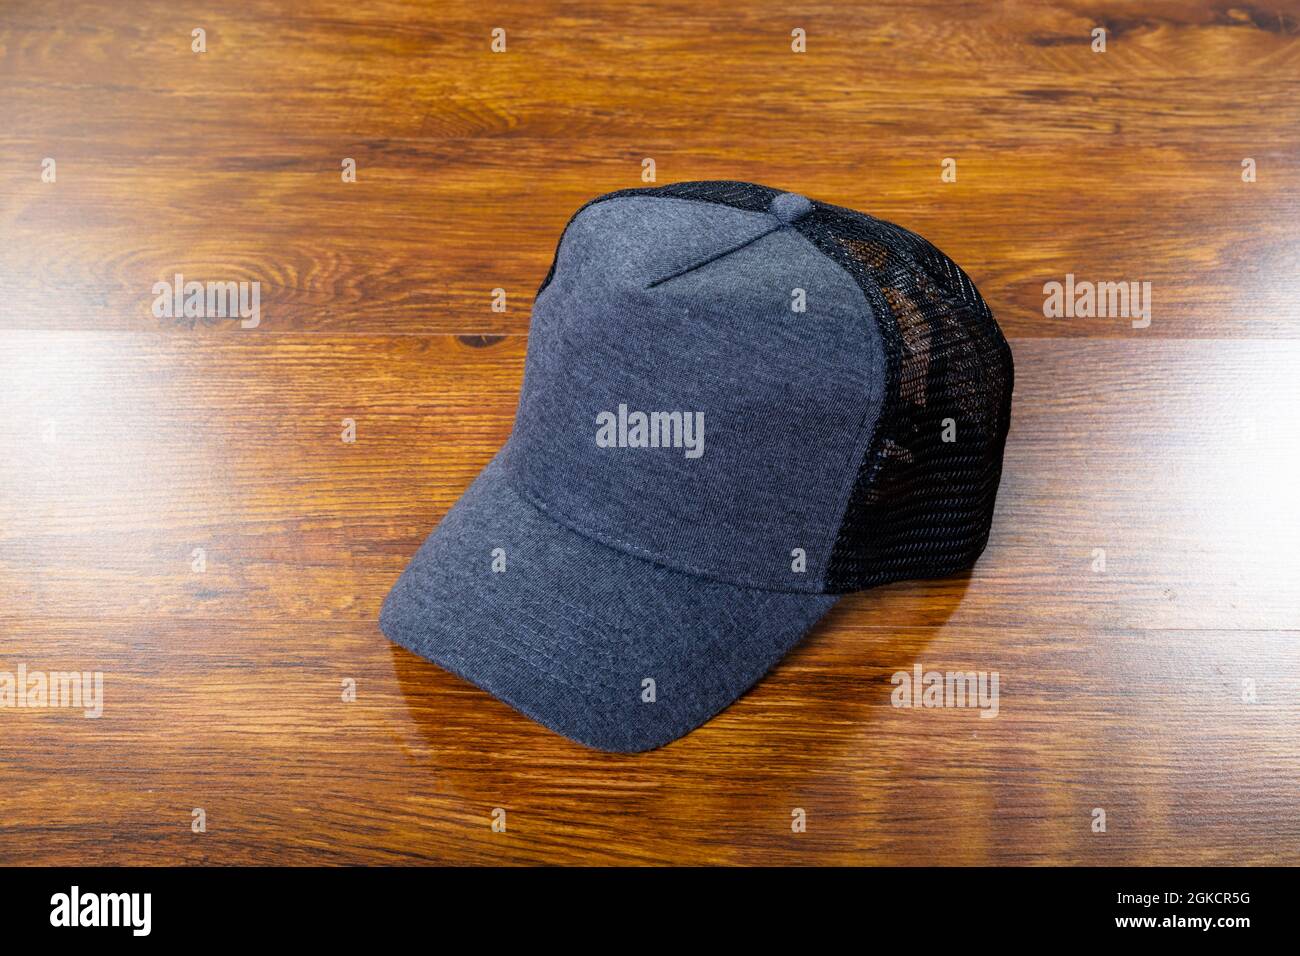 Composition de gros plan de casquette de baseball grise et noire sur fond  de bois Photo Stock - Alamy